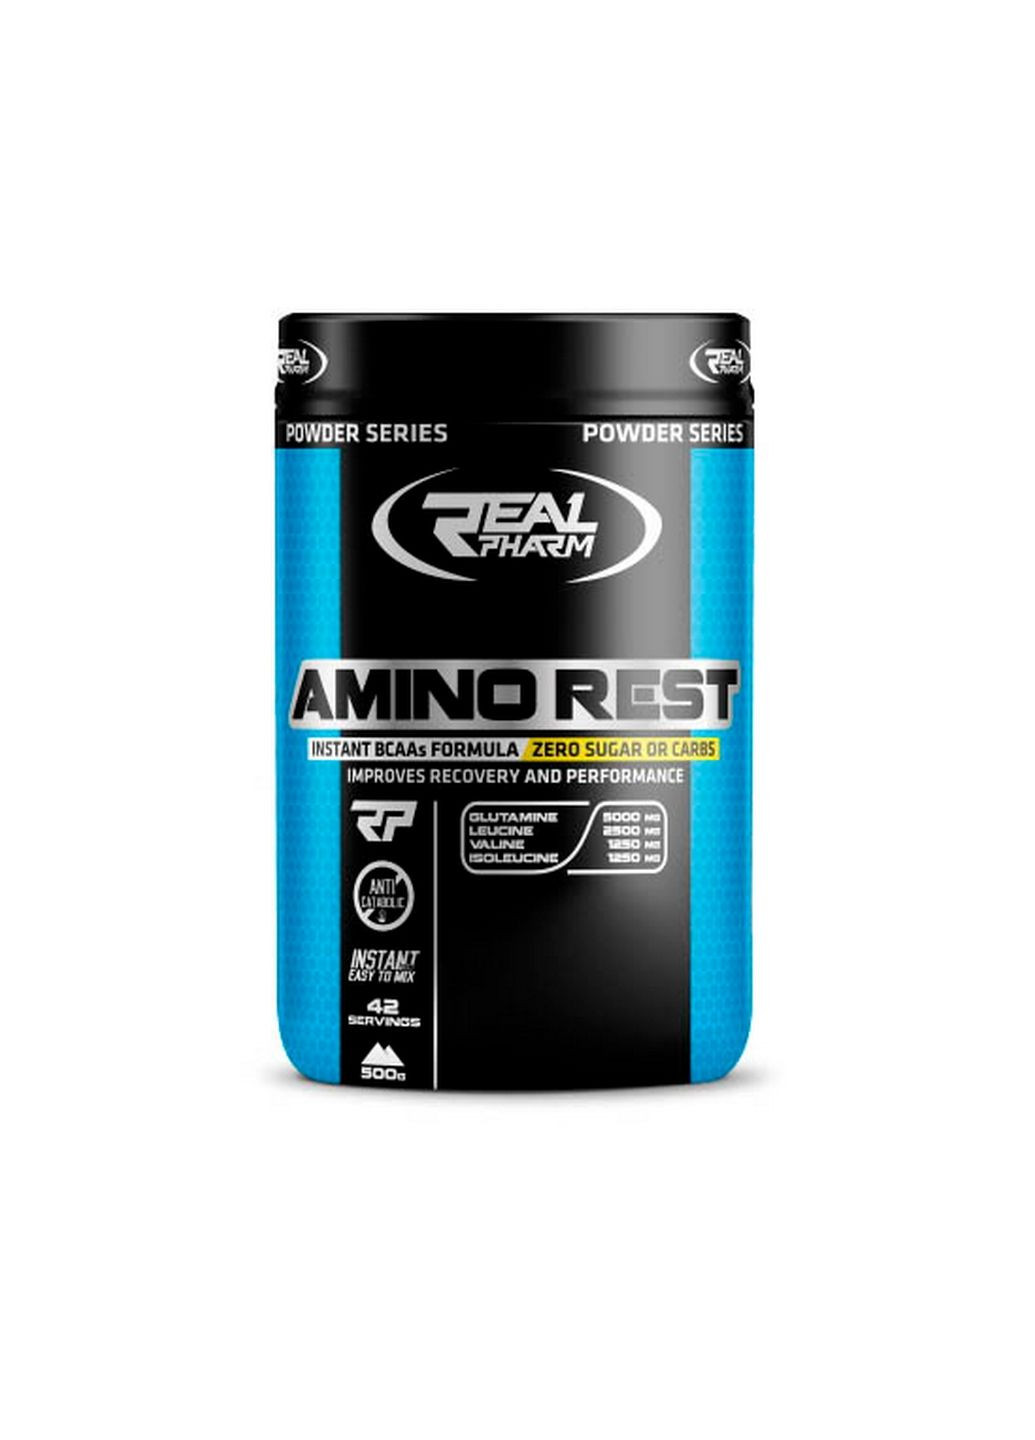 Аминокислота Amino Rest, 500 грамм Манго-маракуйя Real Pharm (293341074)